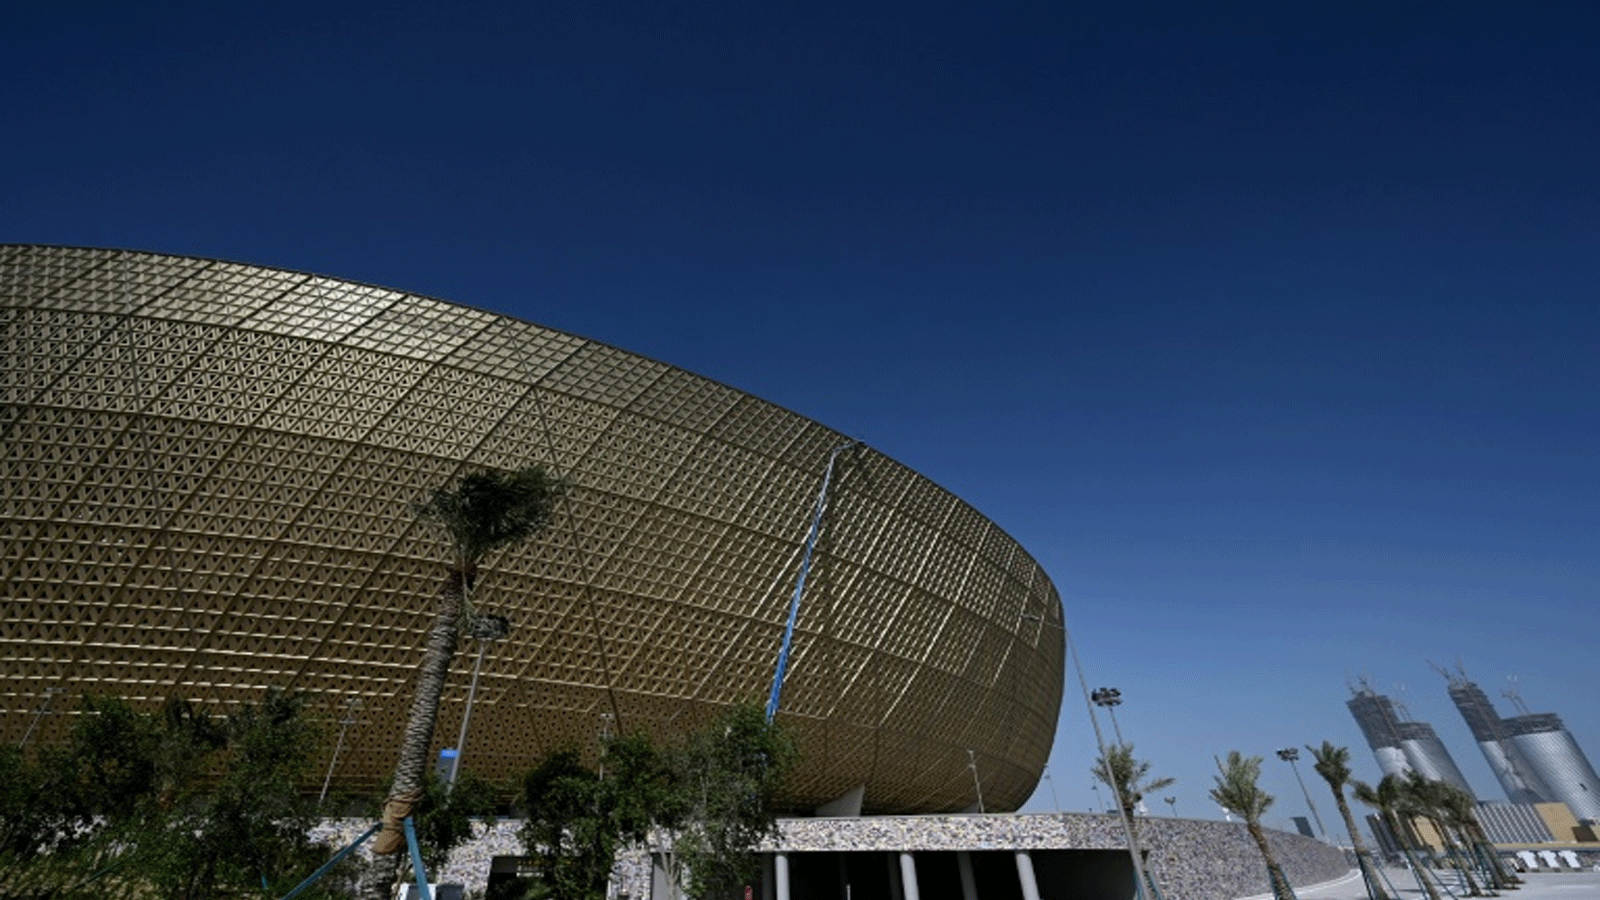 ملعب لوسيل الذي يتسّع لـ80 ألف متفرّج، وسيحتضن المباراة النهائية في مونديال قطر 2022